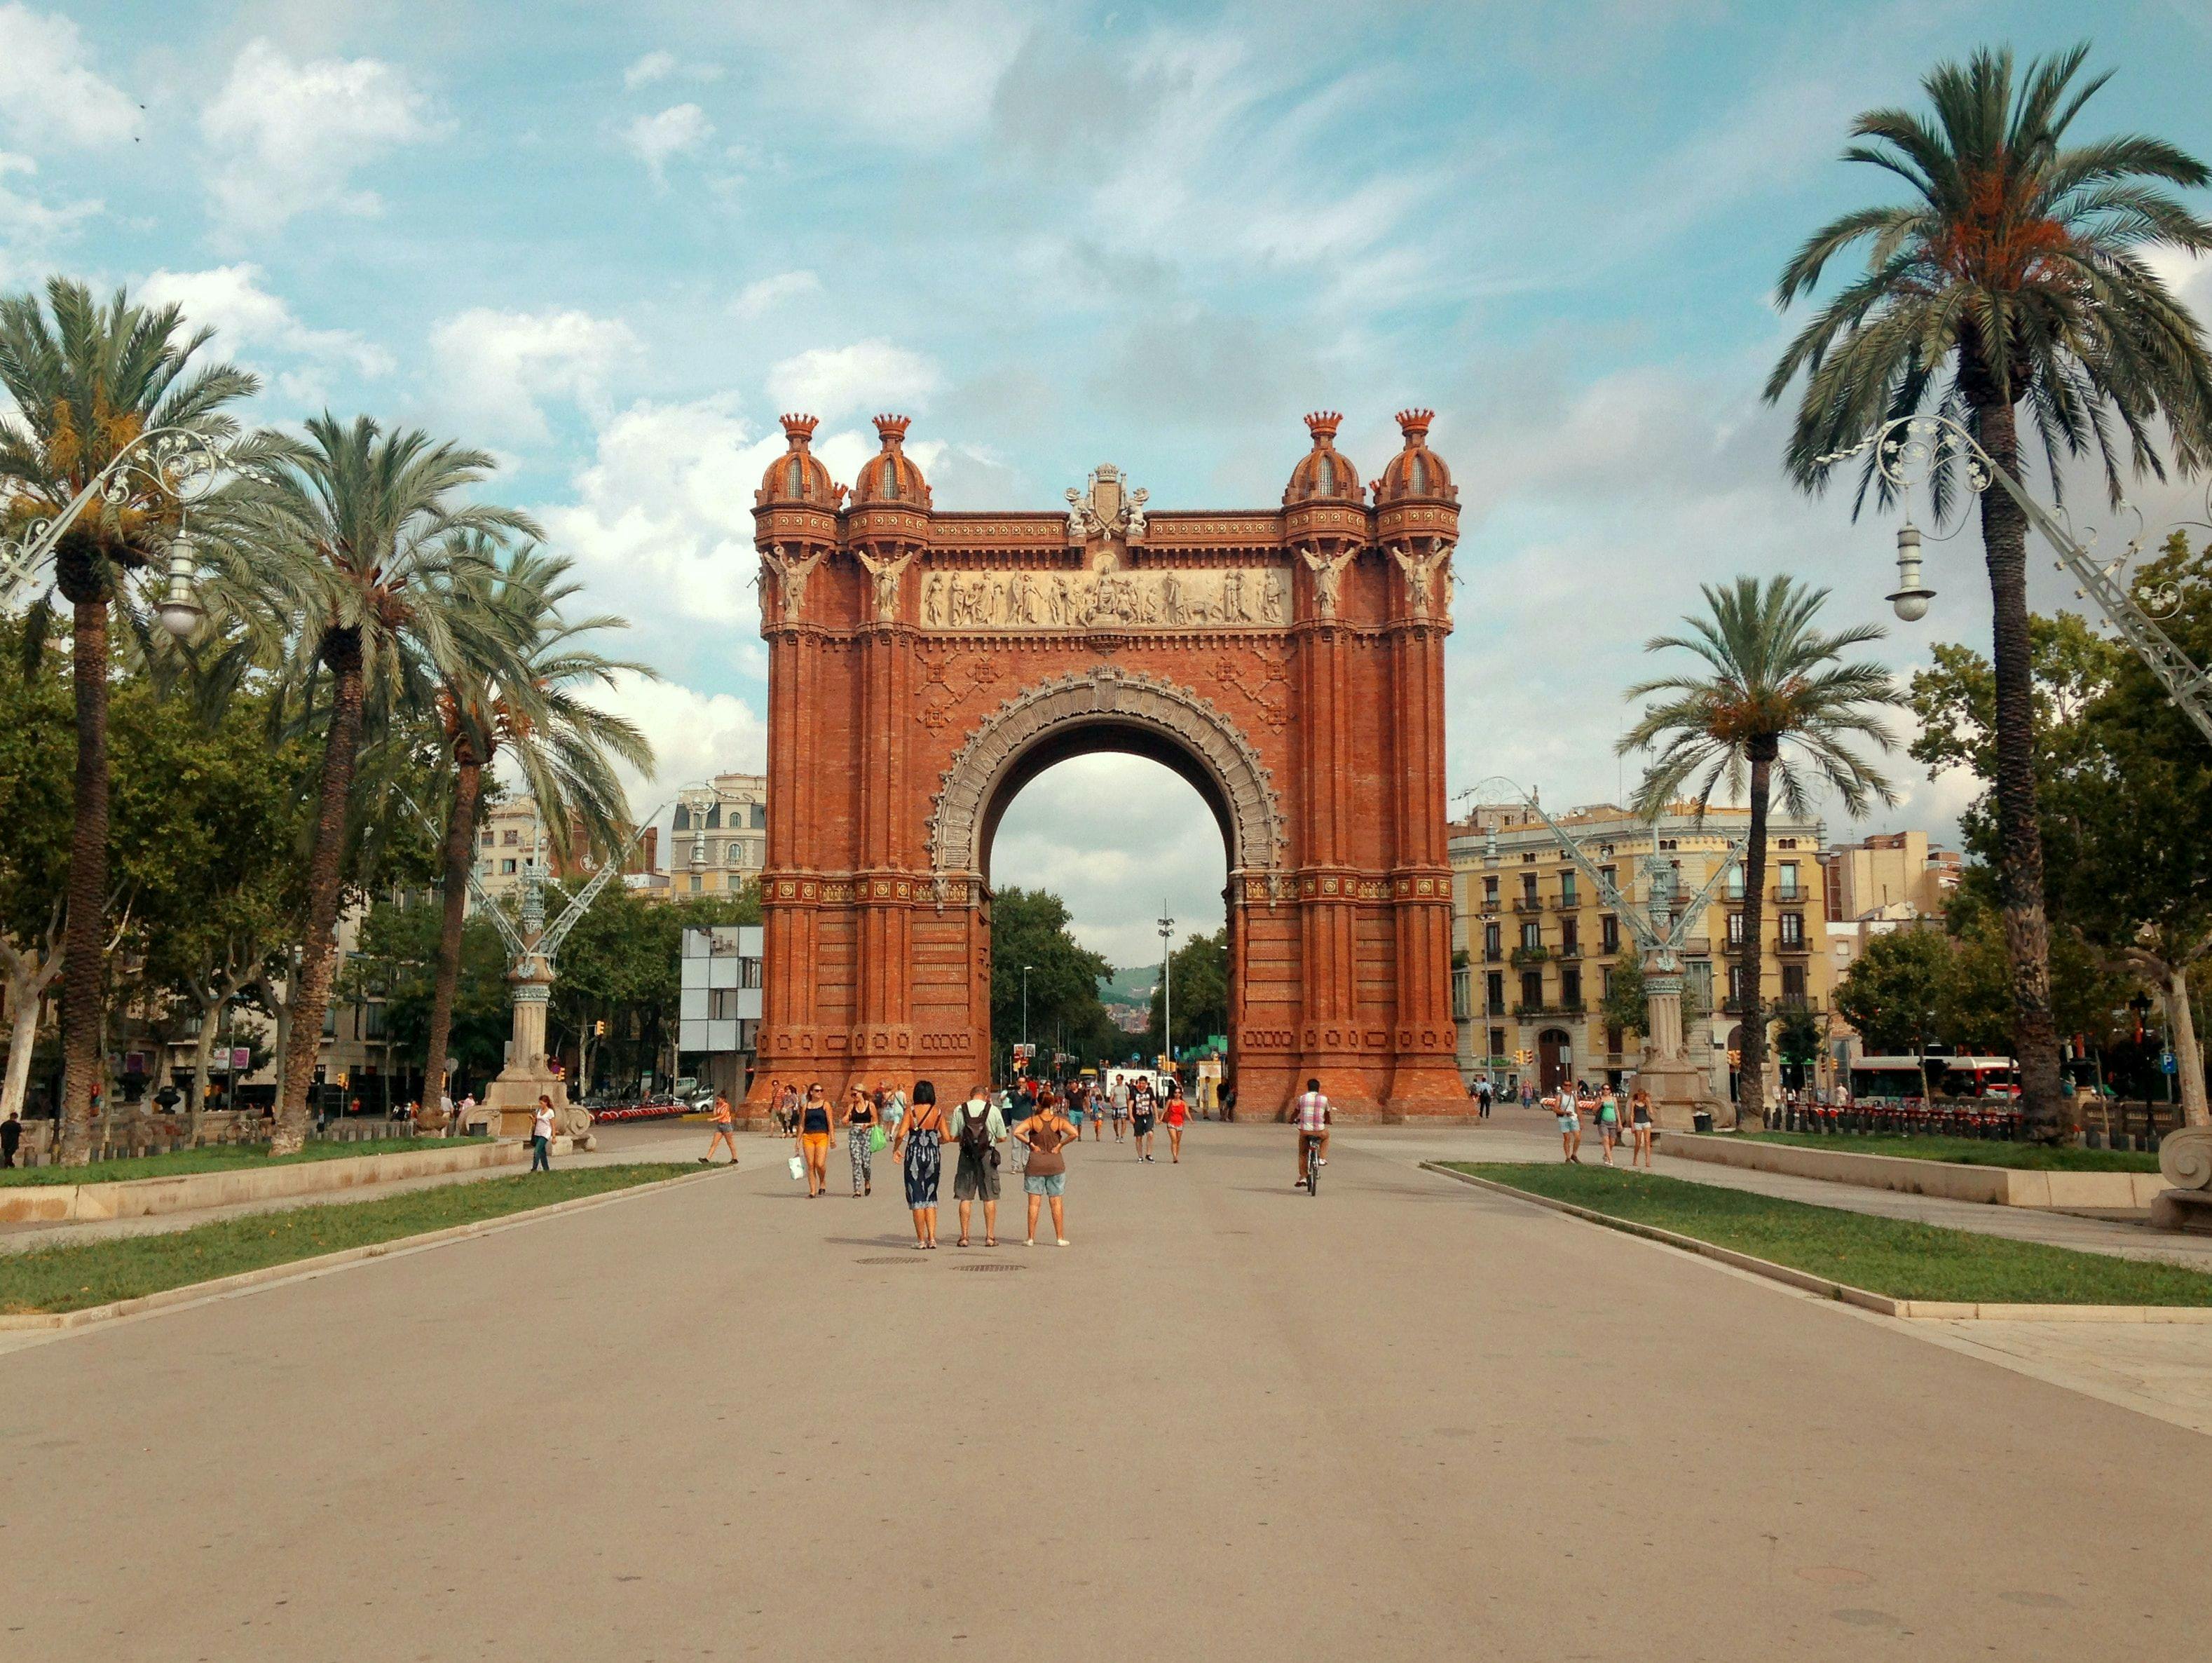 People walking in park in Barcelona